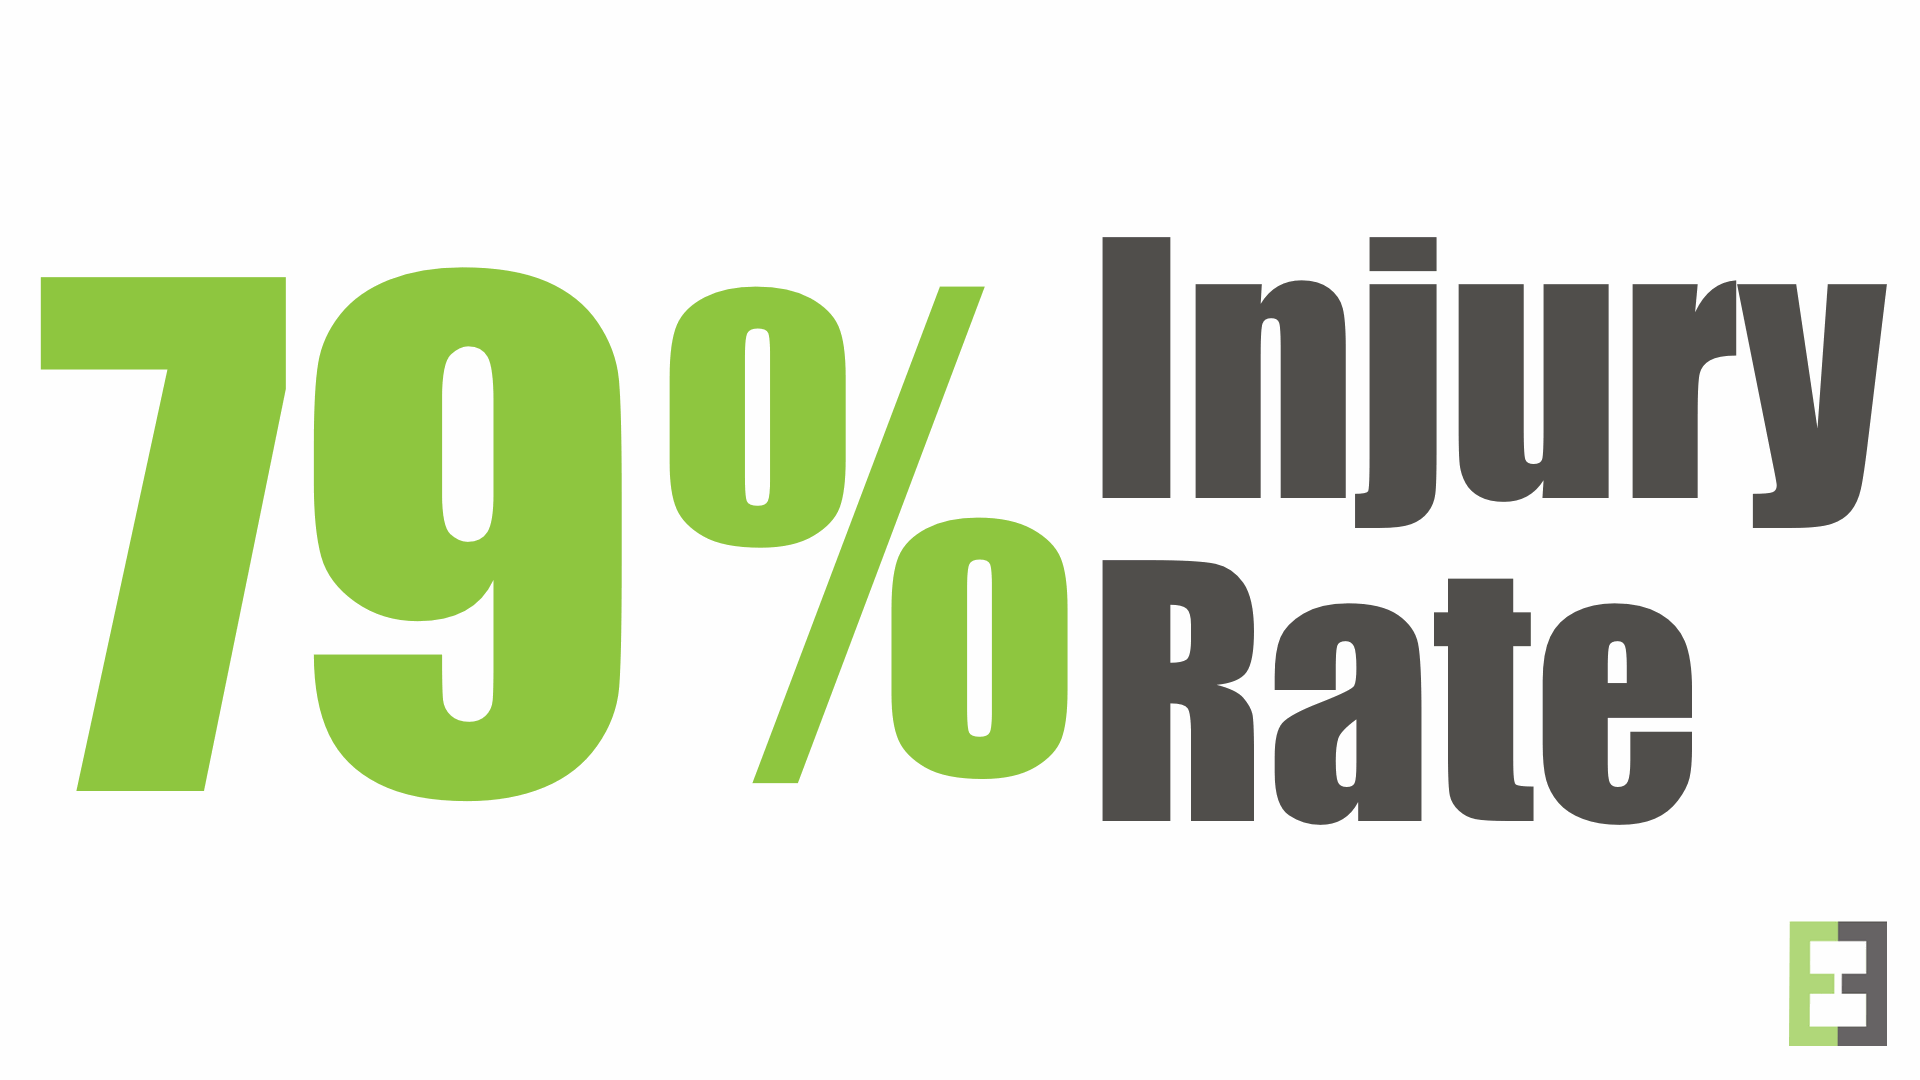 79% injurt rate.png